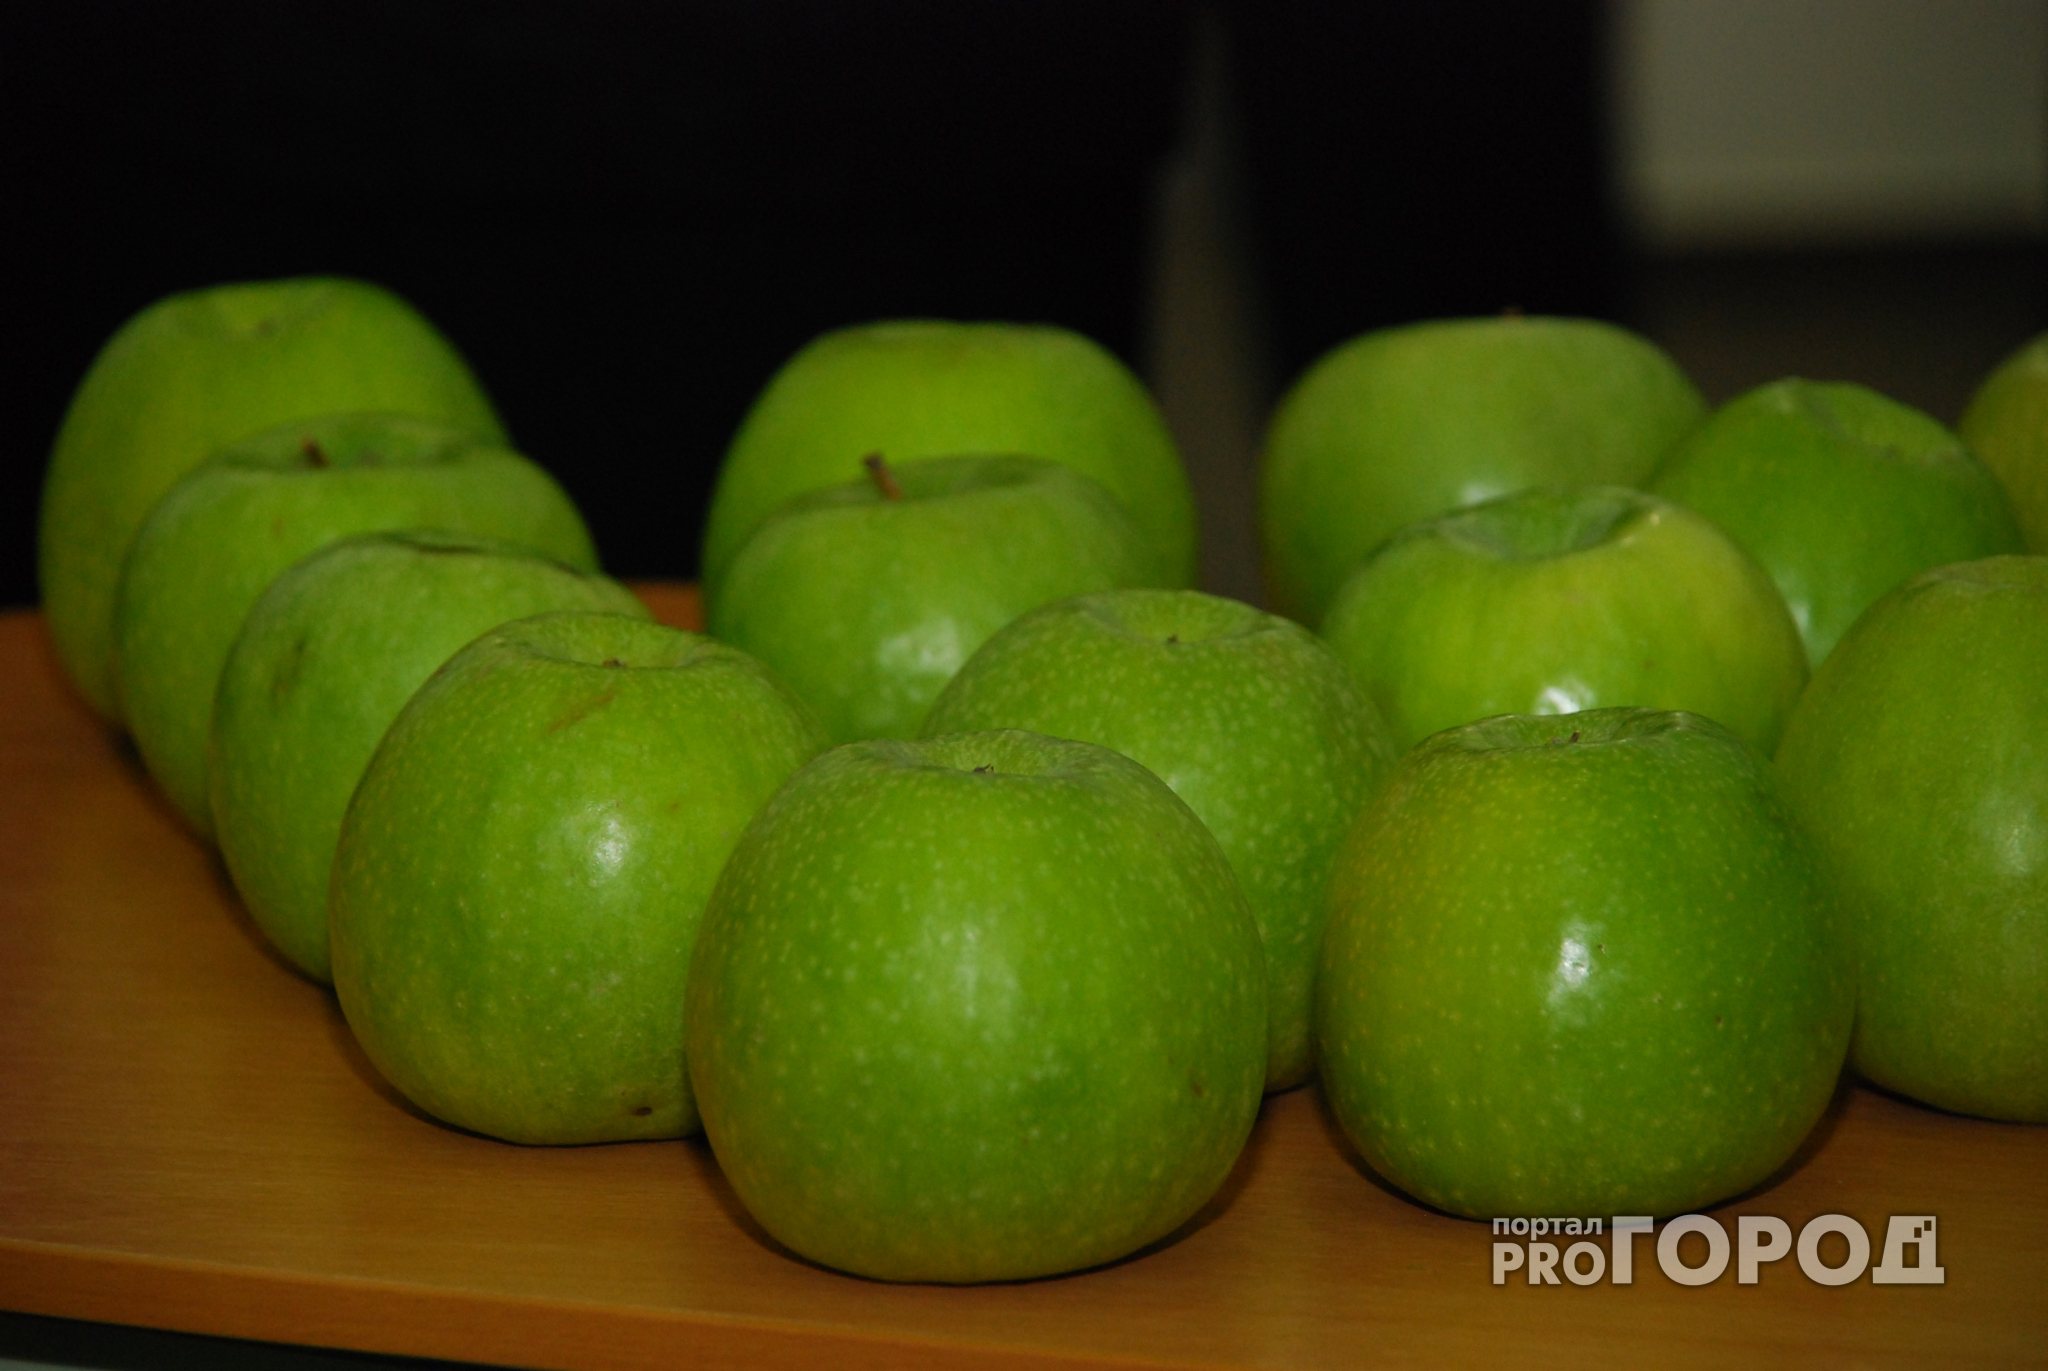 В Нижнем Новгороде изъяли крупную партию санкционных яблок из Польши